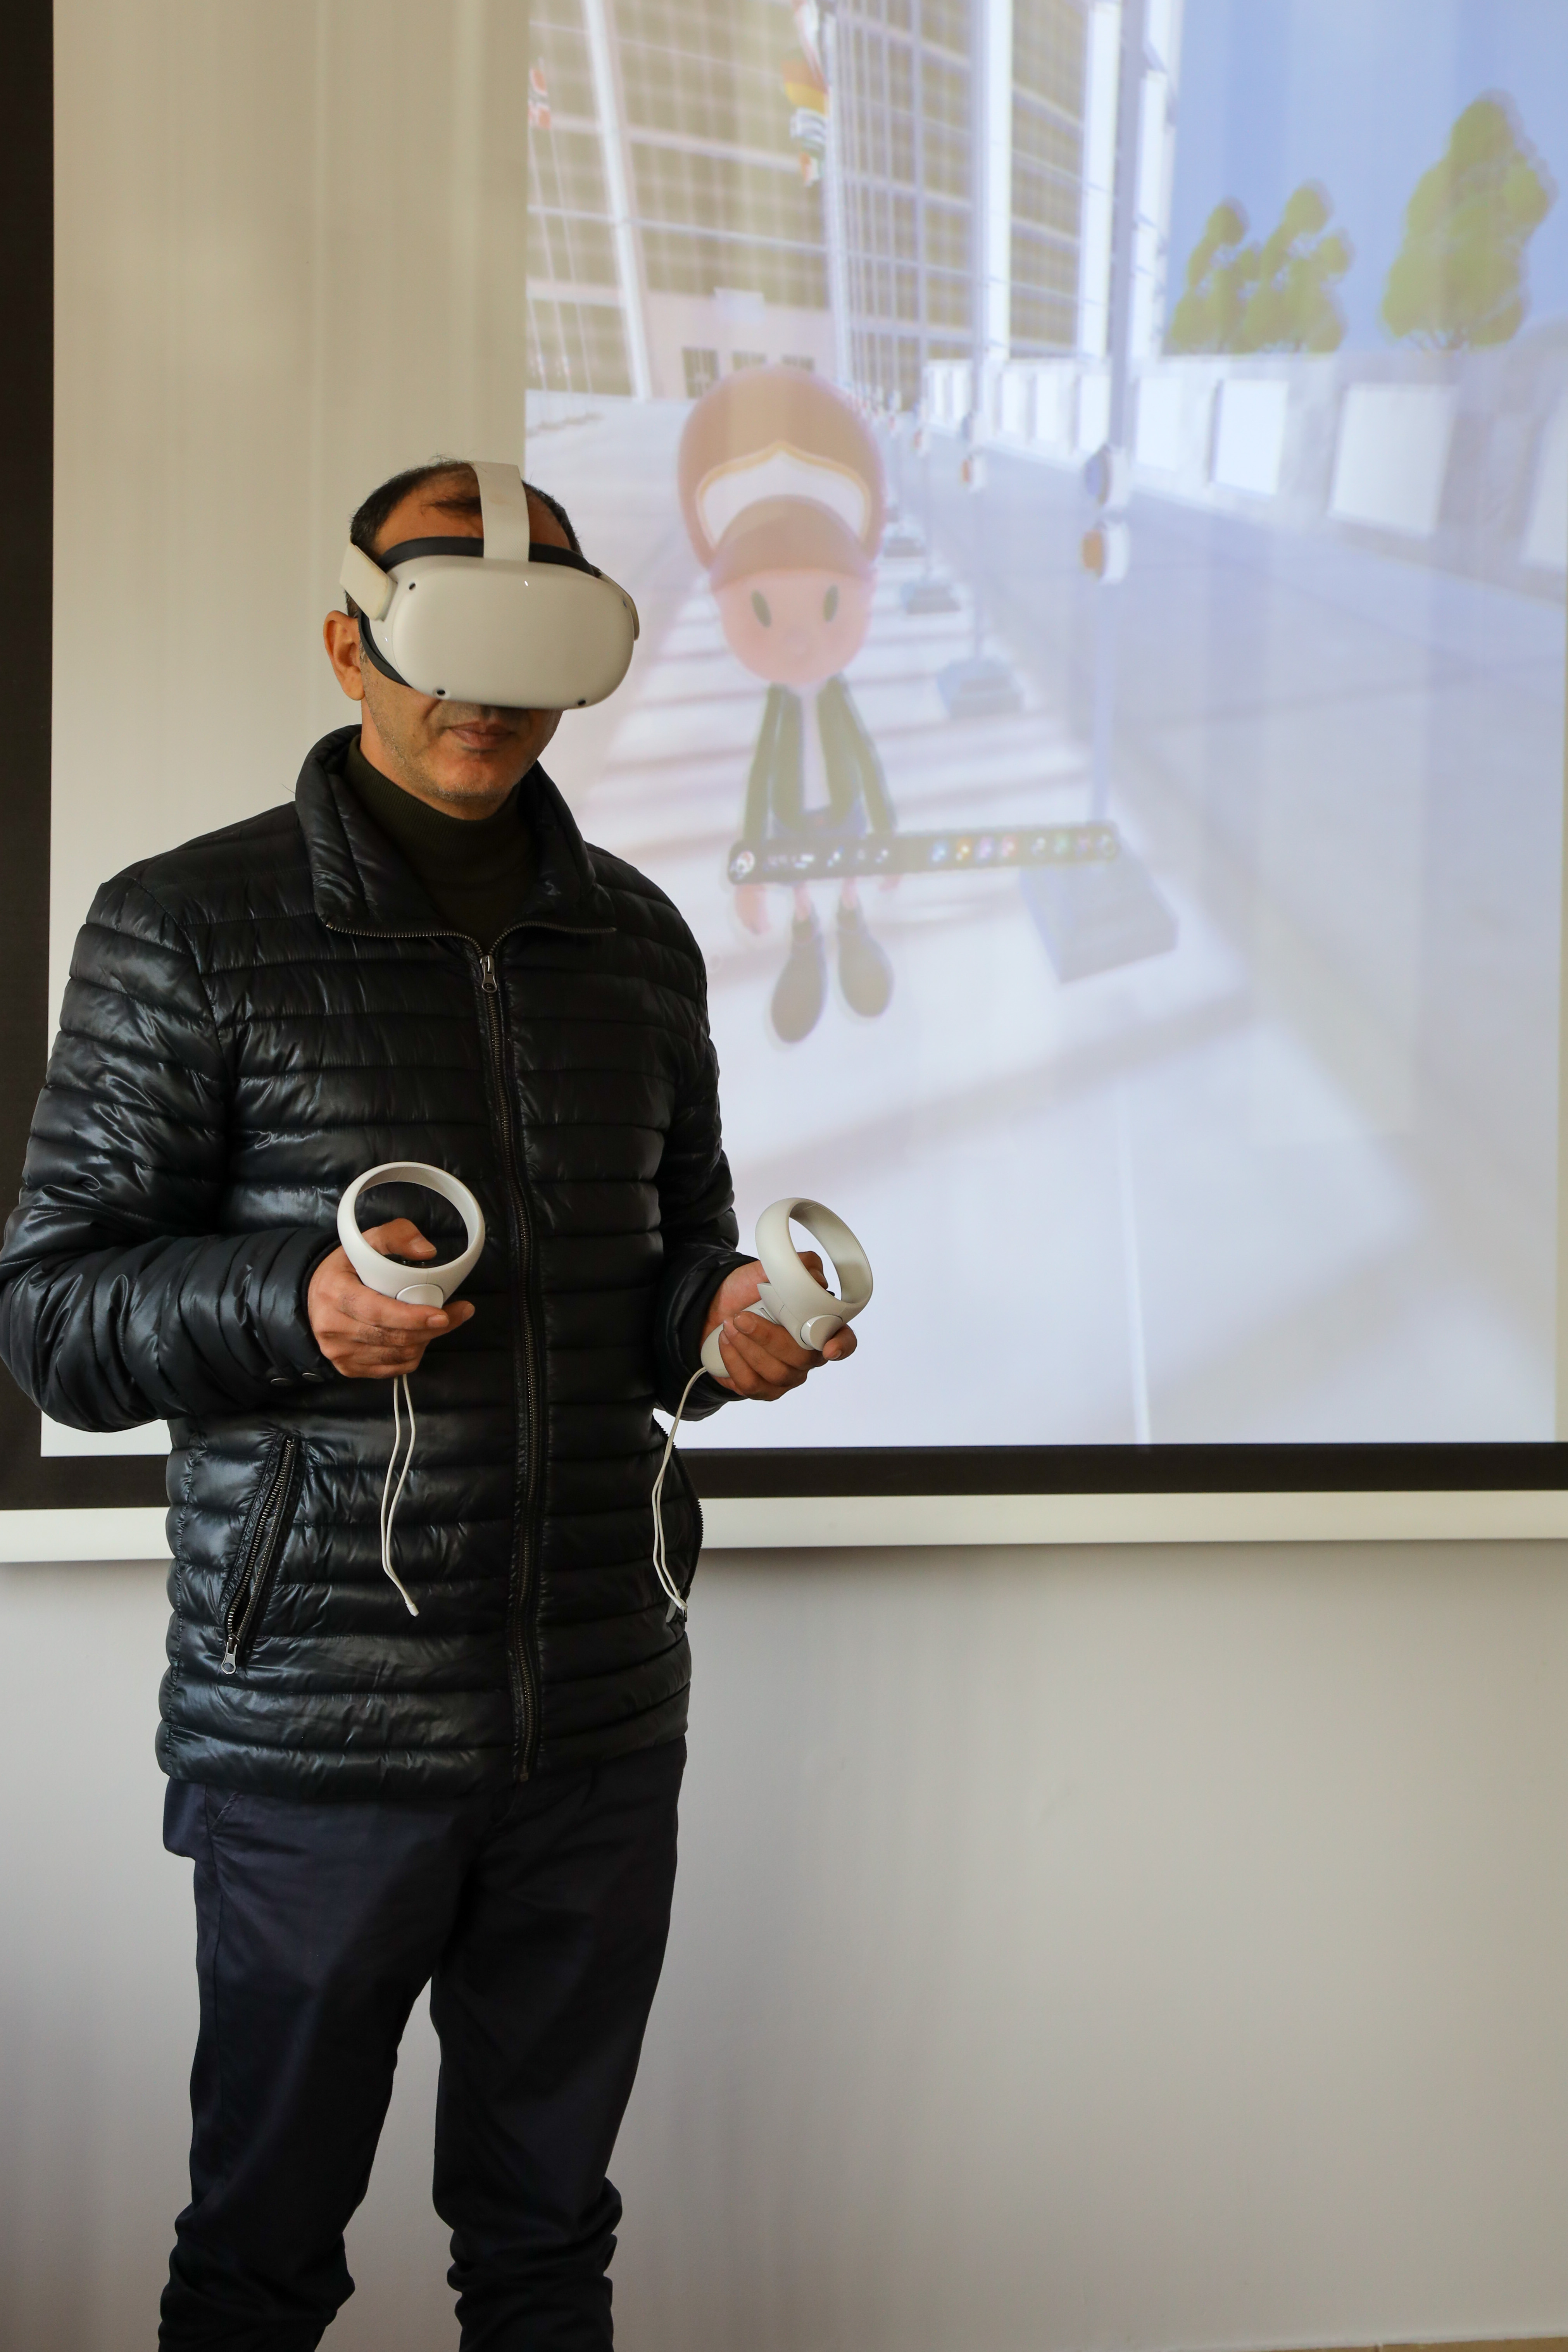 Przygotowanie do warsztatów z wykorzystaniem wirtualnej rzeczywistości (VR) poprzez aplikację na urządzenia Oculus.